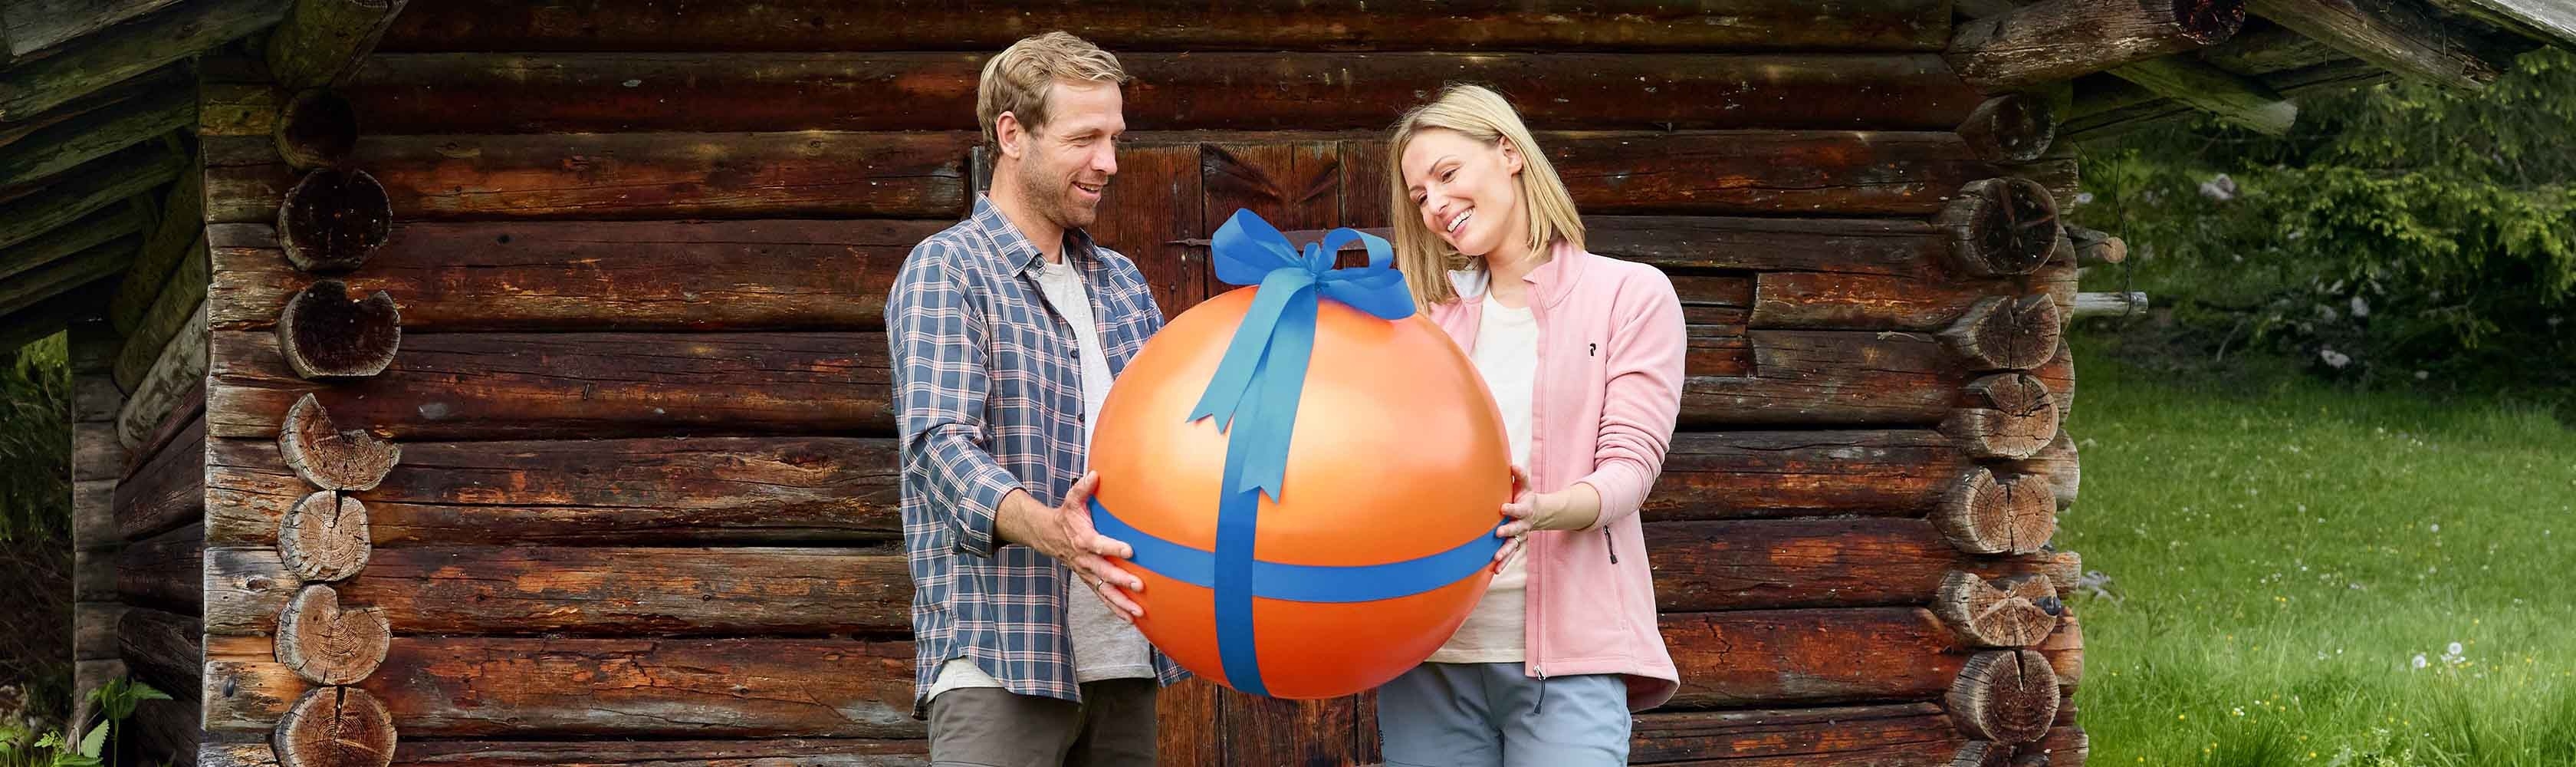 Zwei Personen und einen orangen Ball als Geschenk verpackt.